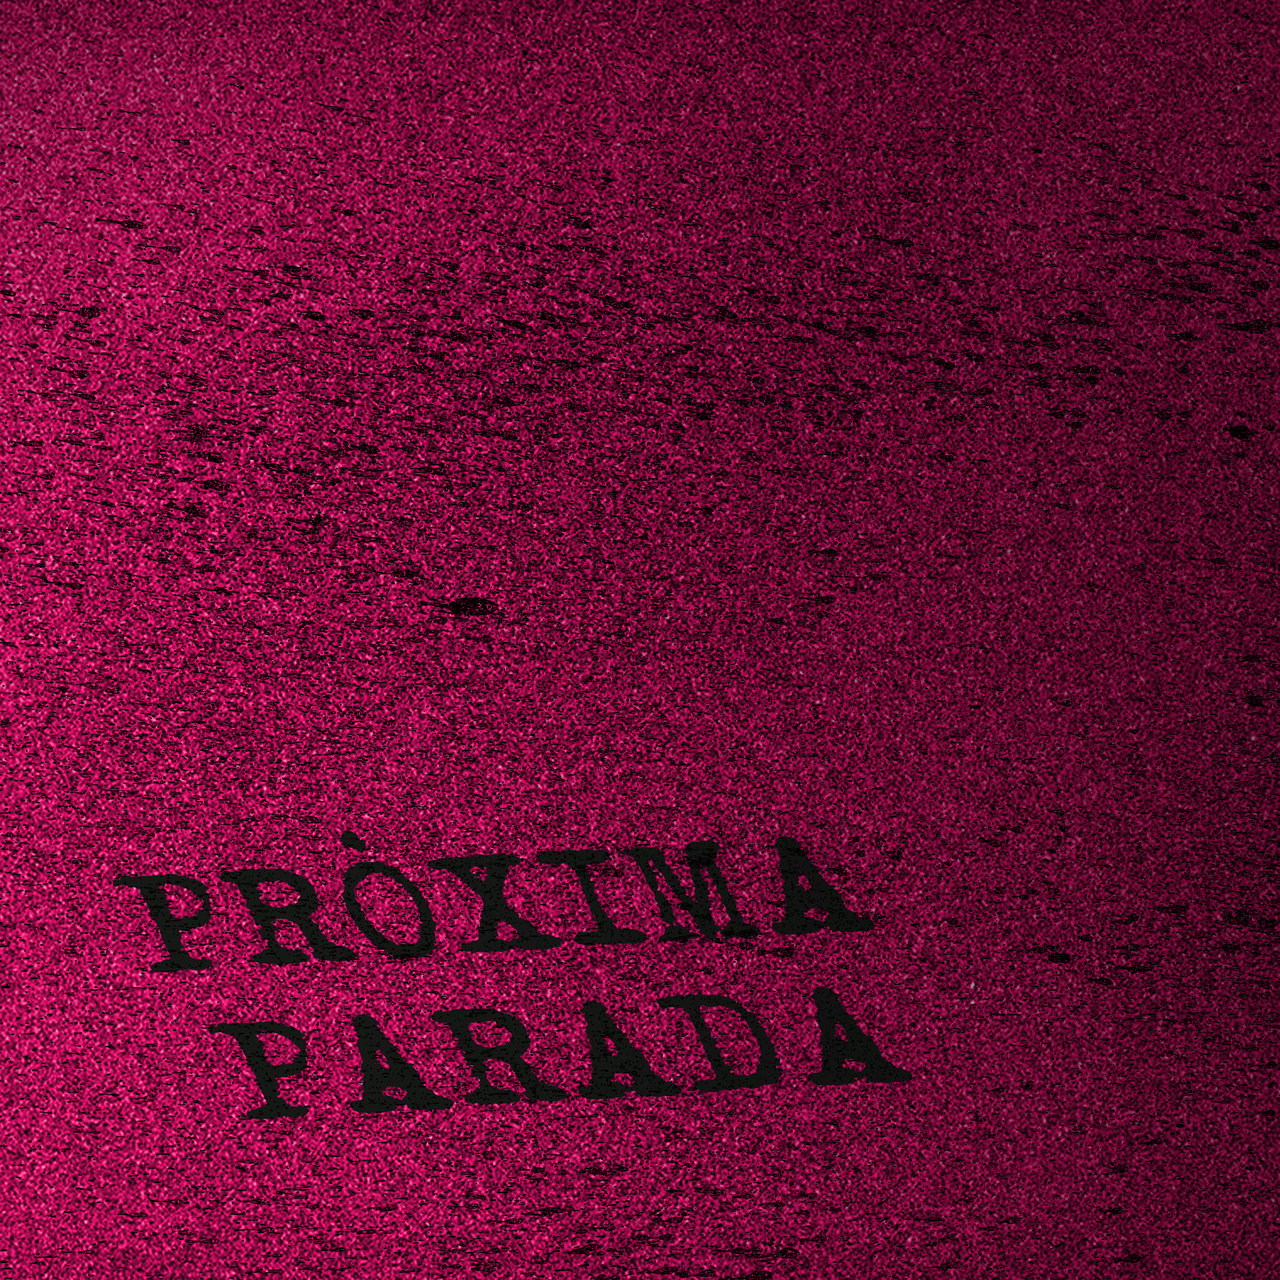 La Fúmiga Pròxima Parada cover artwork